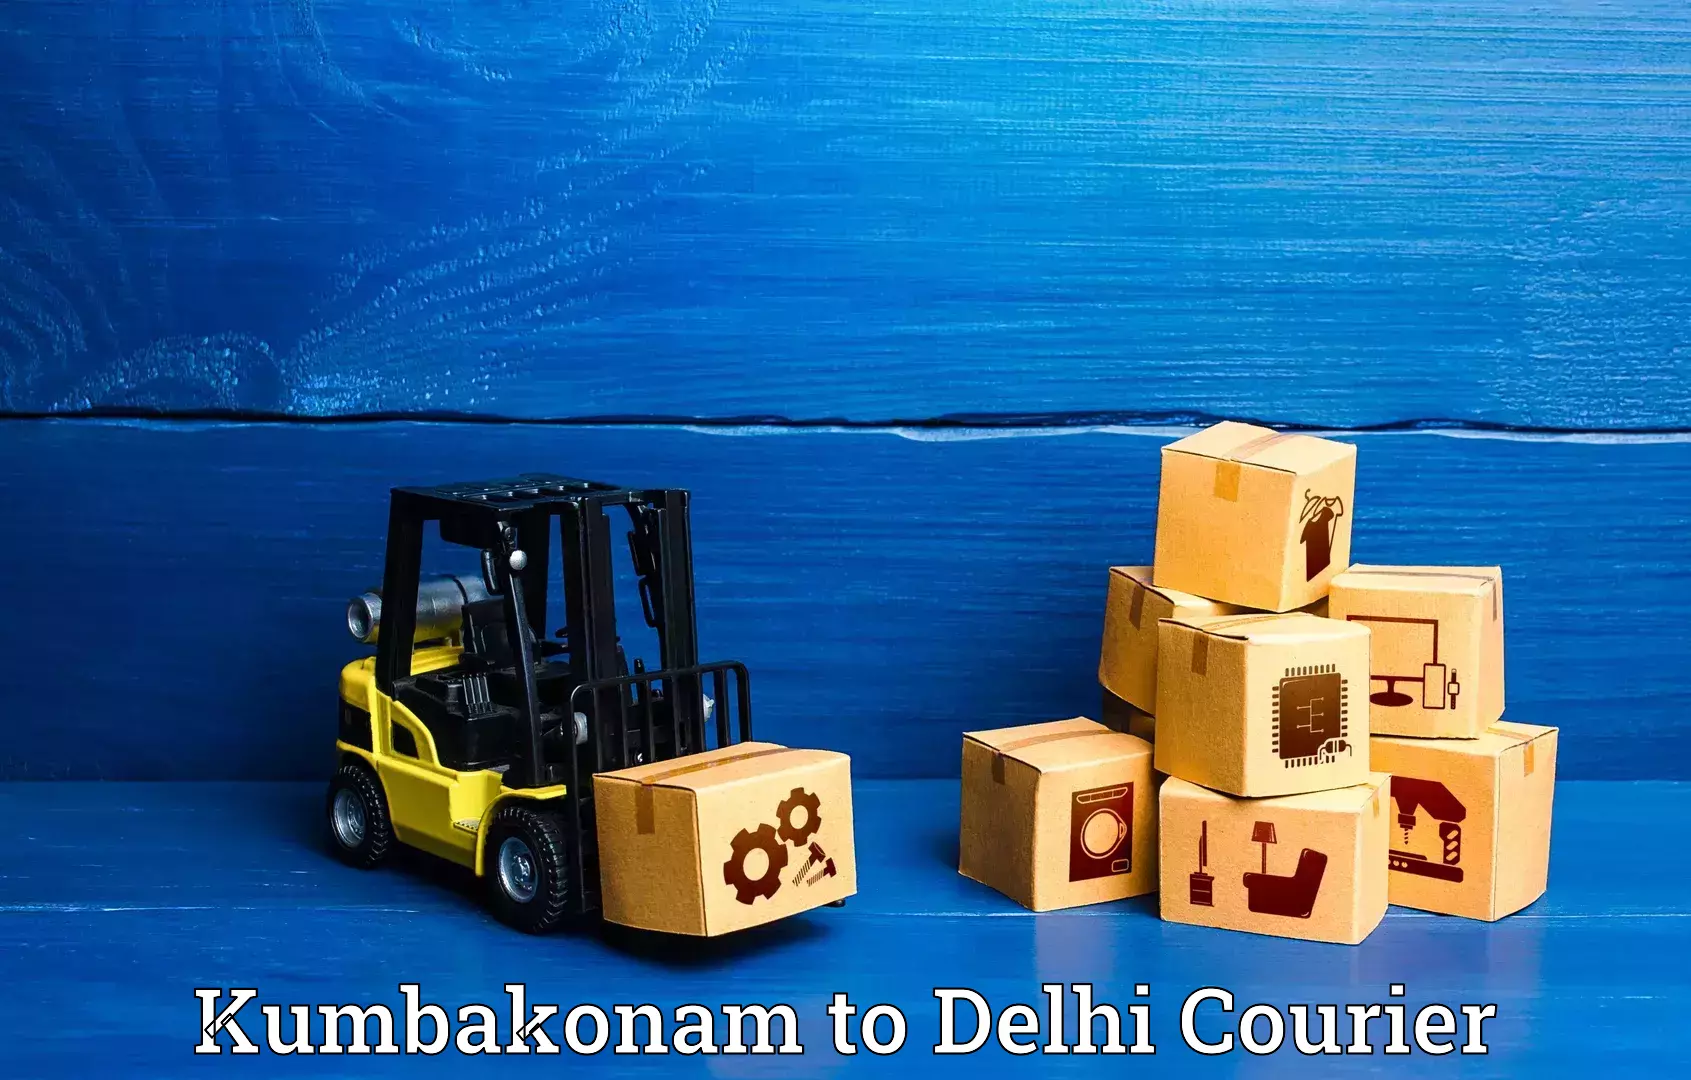 Luggage transport service Kumbakonam to Delhi